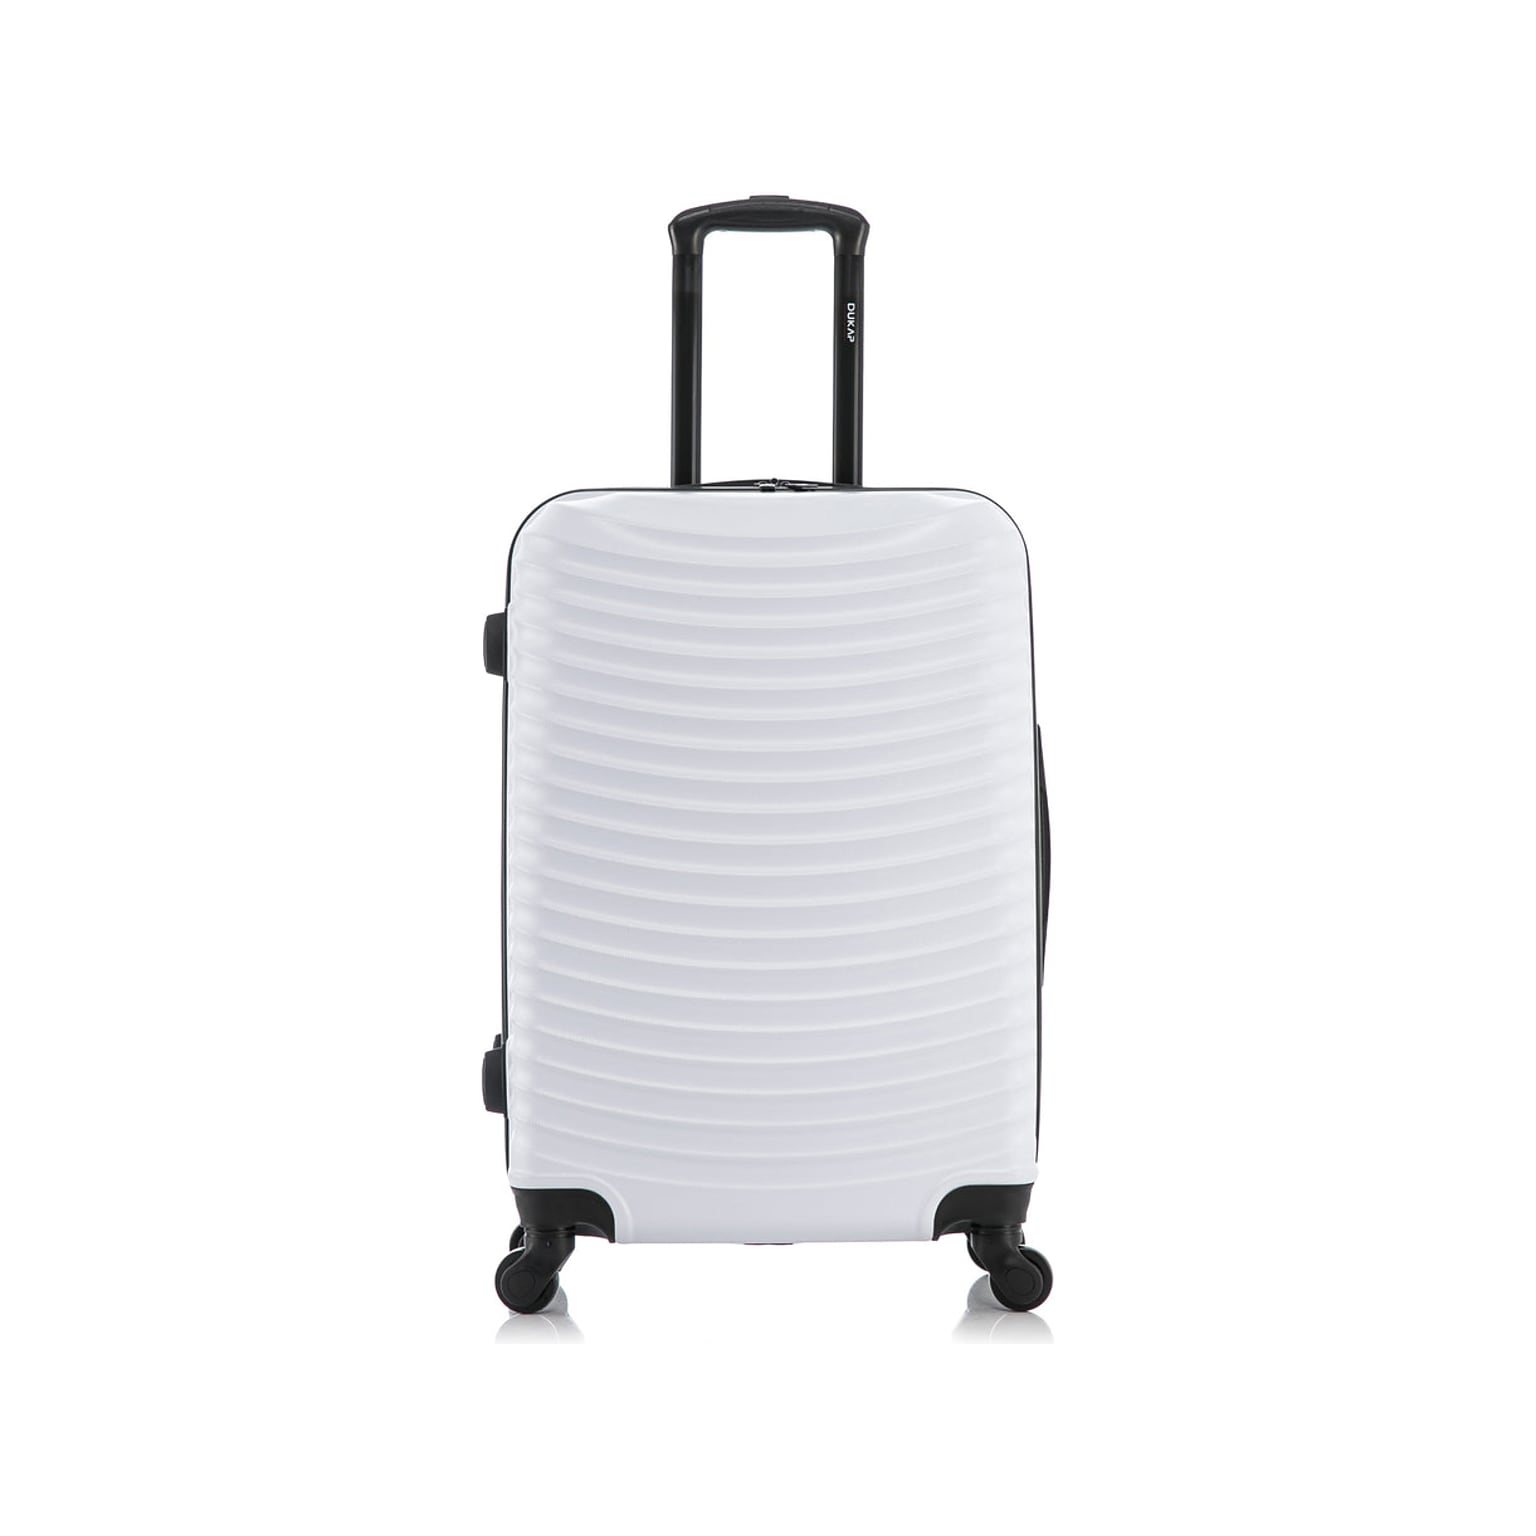 DUKAP Adly 25.39 Hardside Suitcase, 4-Wheeled Spinner, White (DKADL00M-WHI)